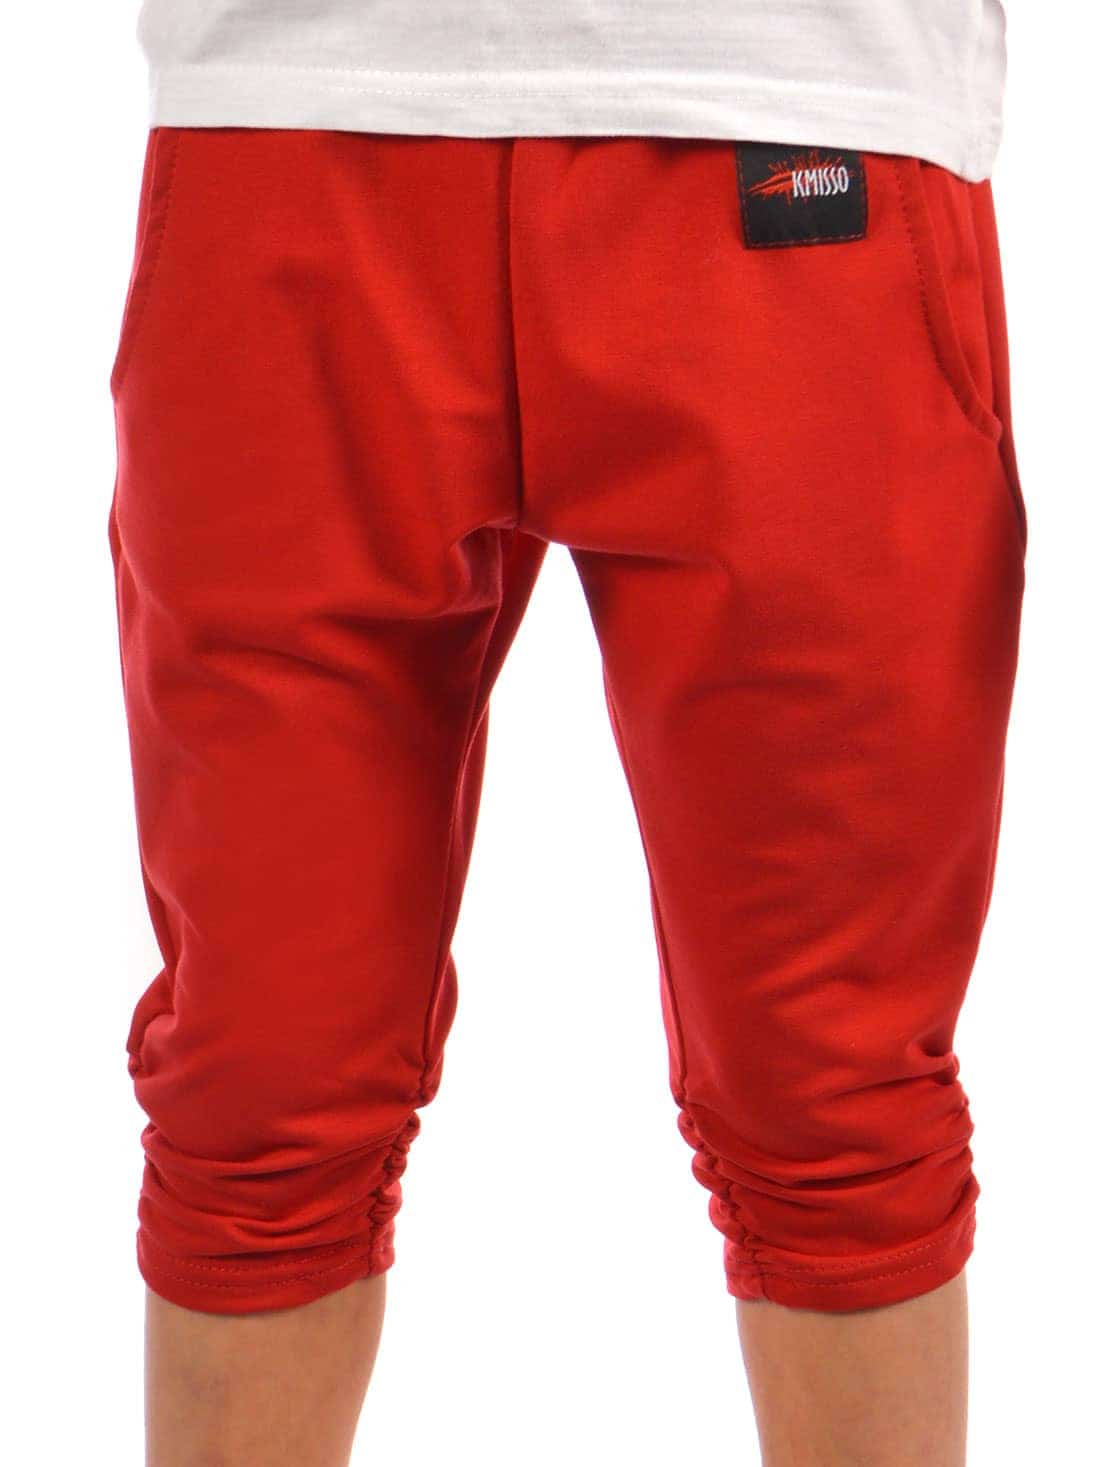 Тканевые брюки Kmisso Capri, красный